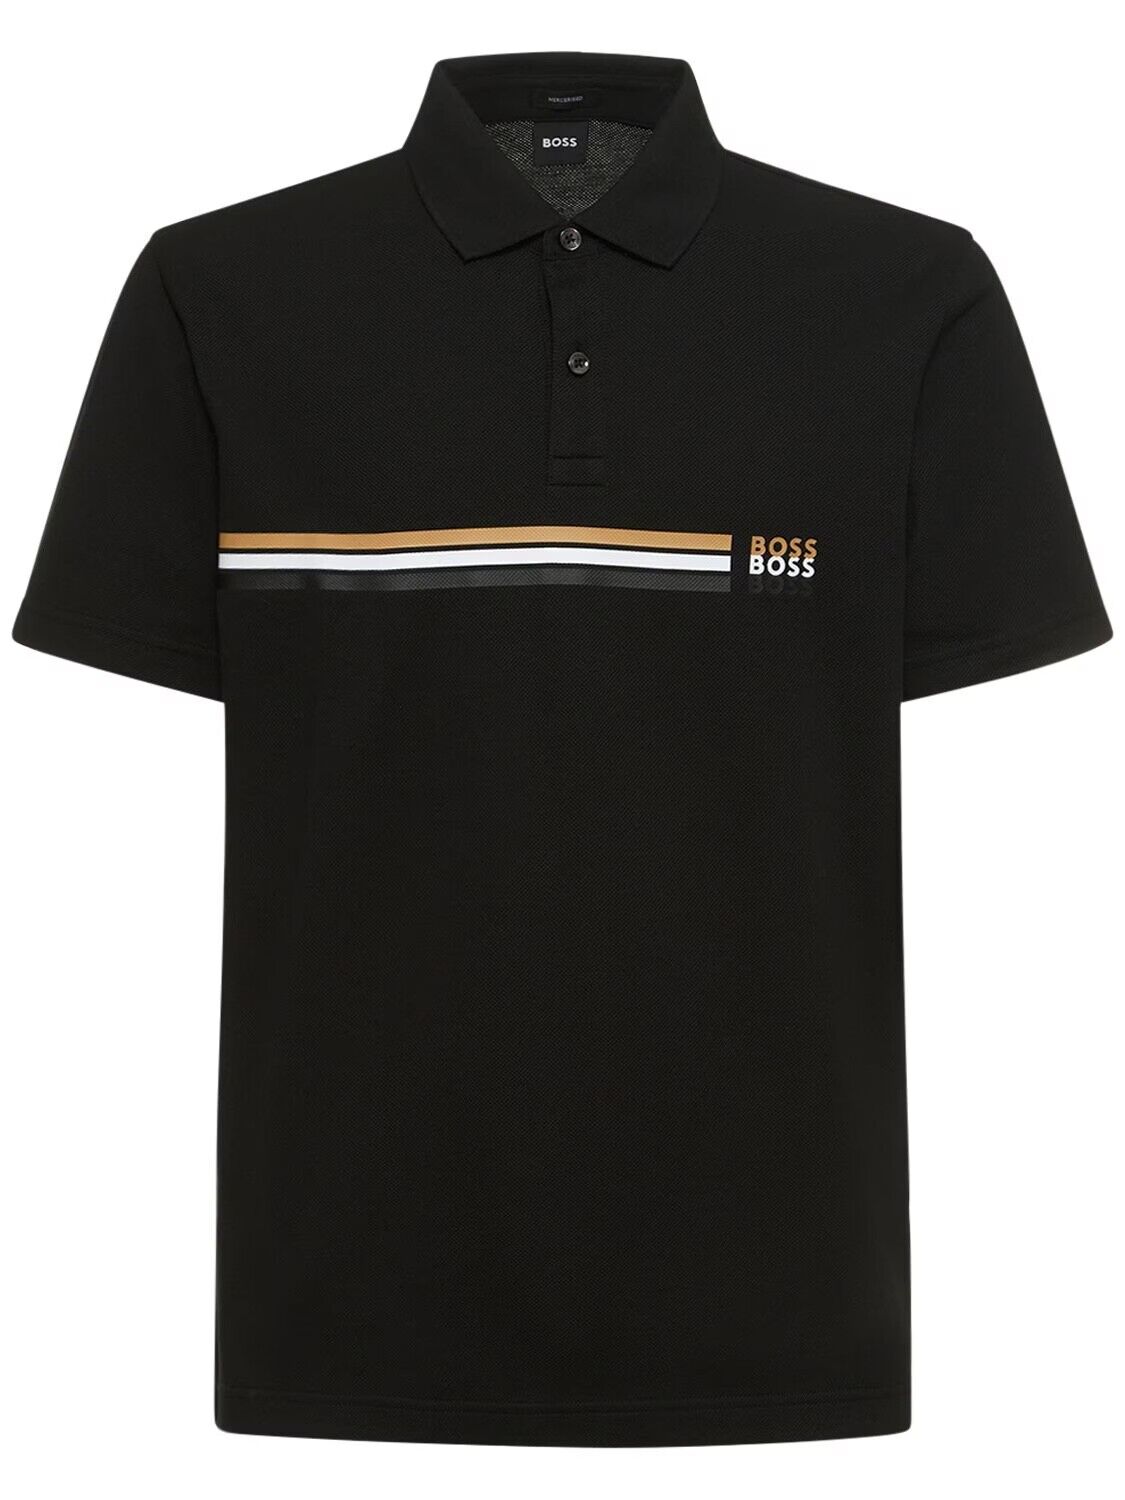 HUGO BOSS Pack 32 Men’s Regular Fit Polo Shirt in Black 50488266 001